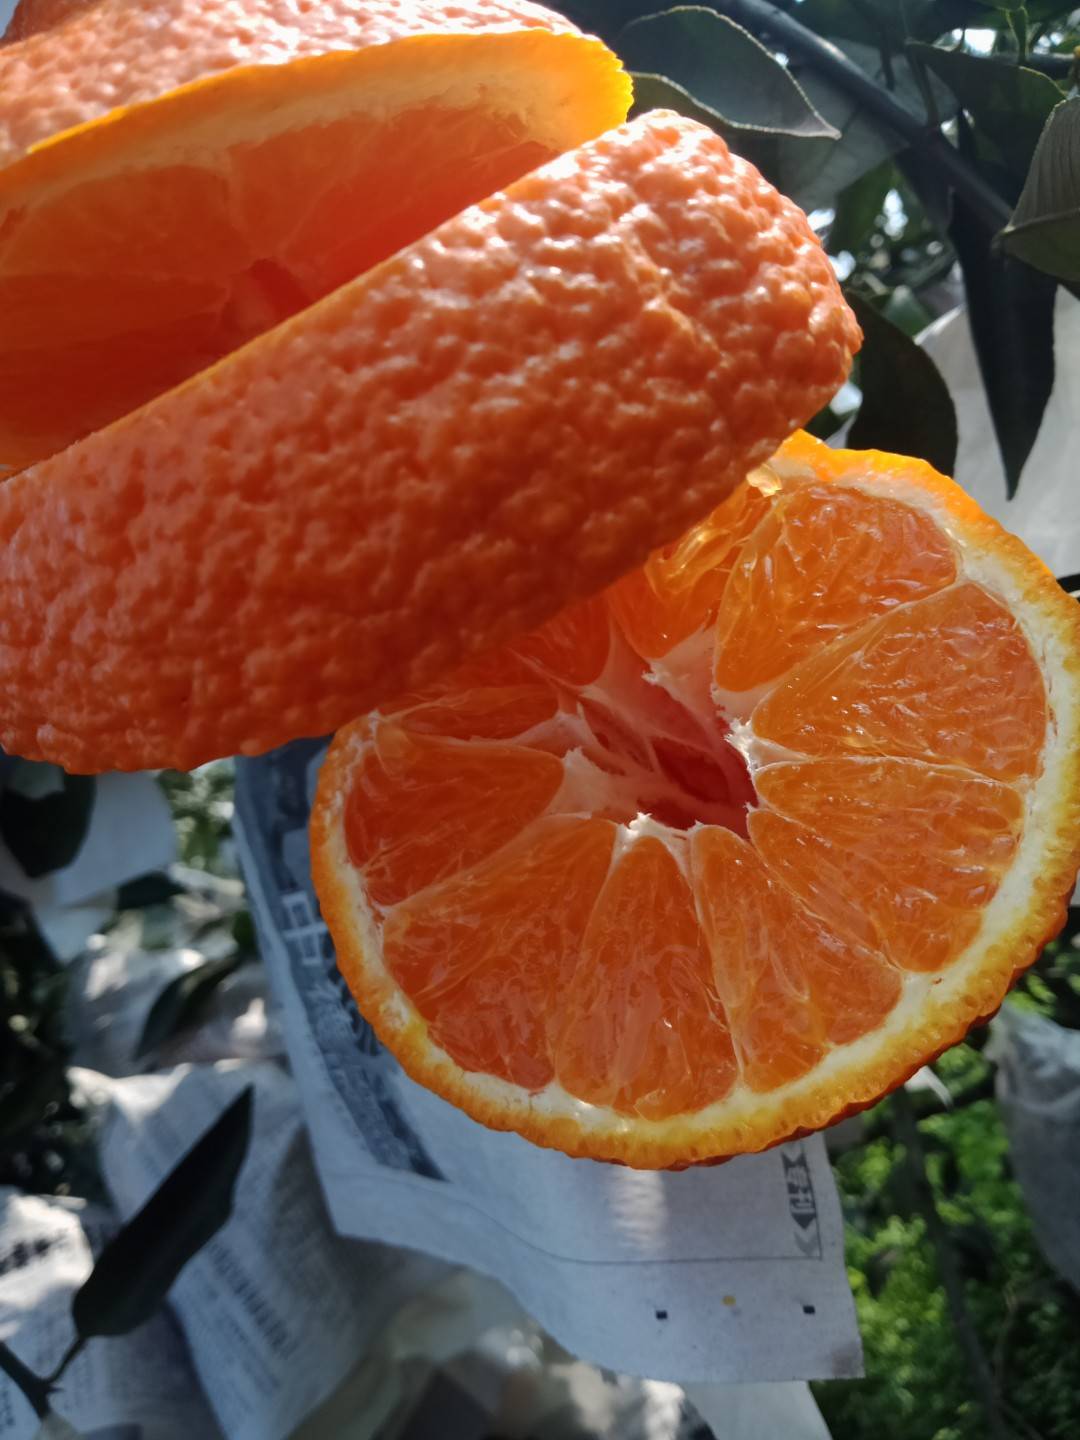 真正正宗的不知火丑橘，是四川眉山地标性晚熟柑橘之一。吃不知火，好生活不上火！